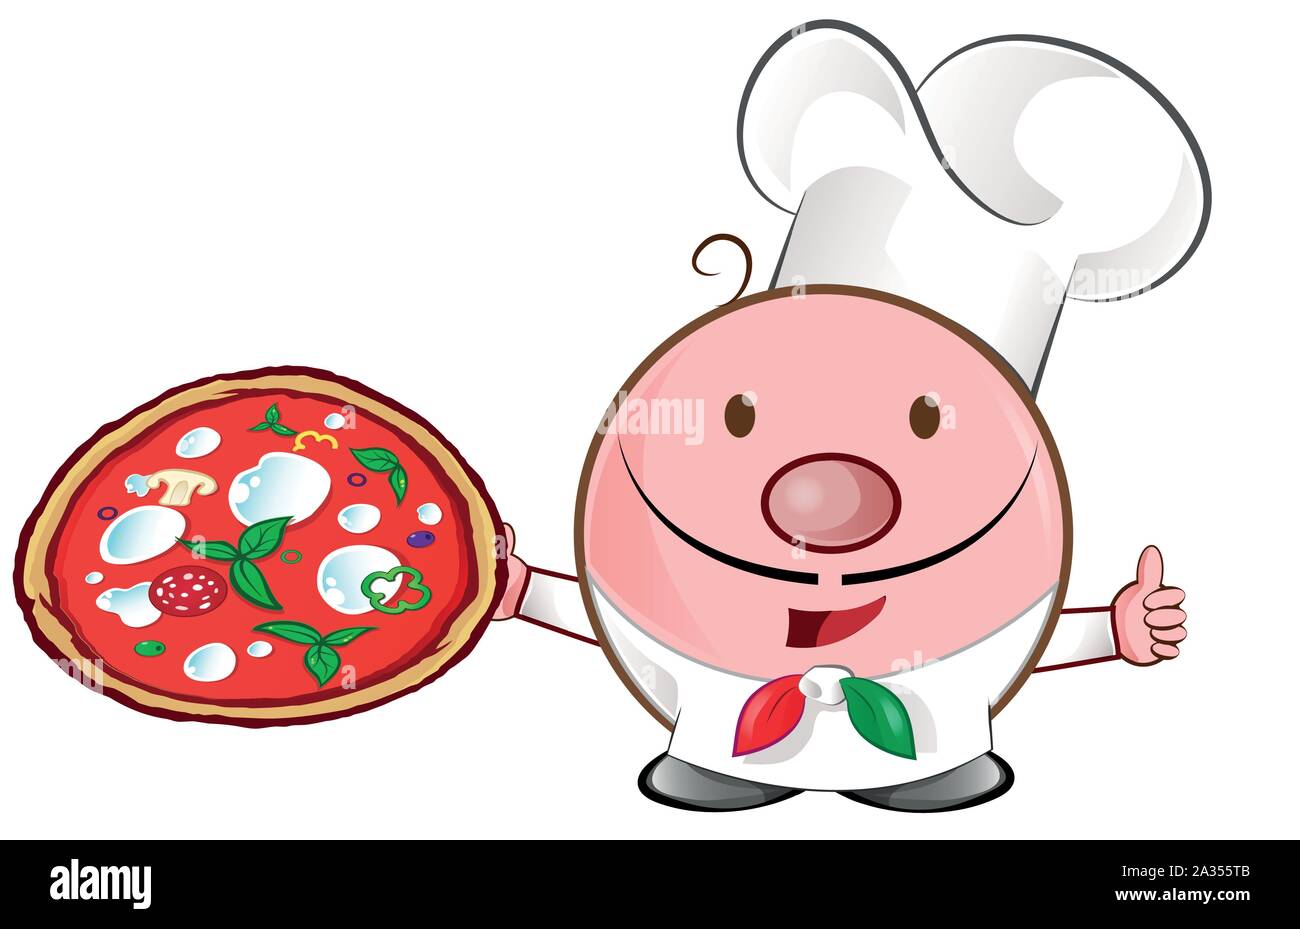 Pizza chef mascota ilustración de dibujos animados. Ilustración del Vector